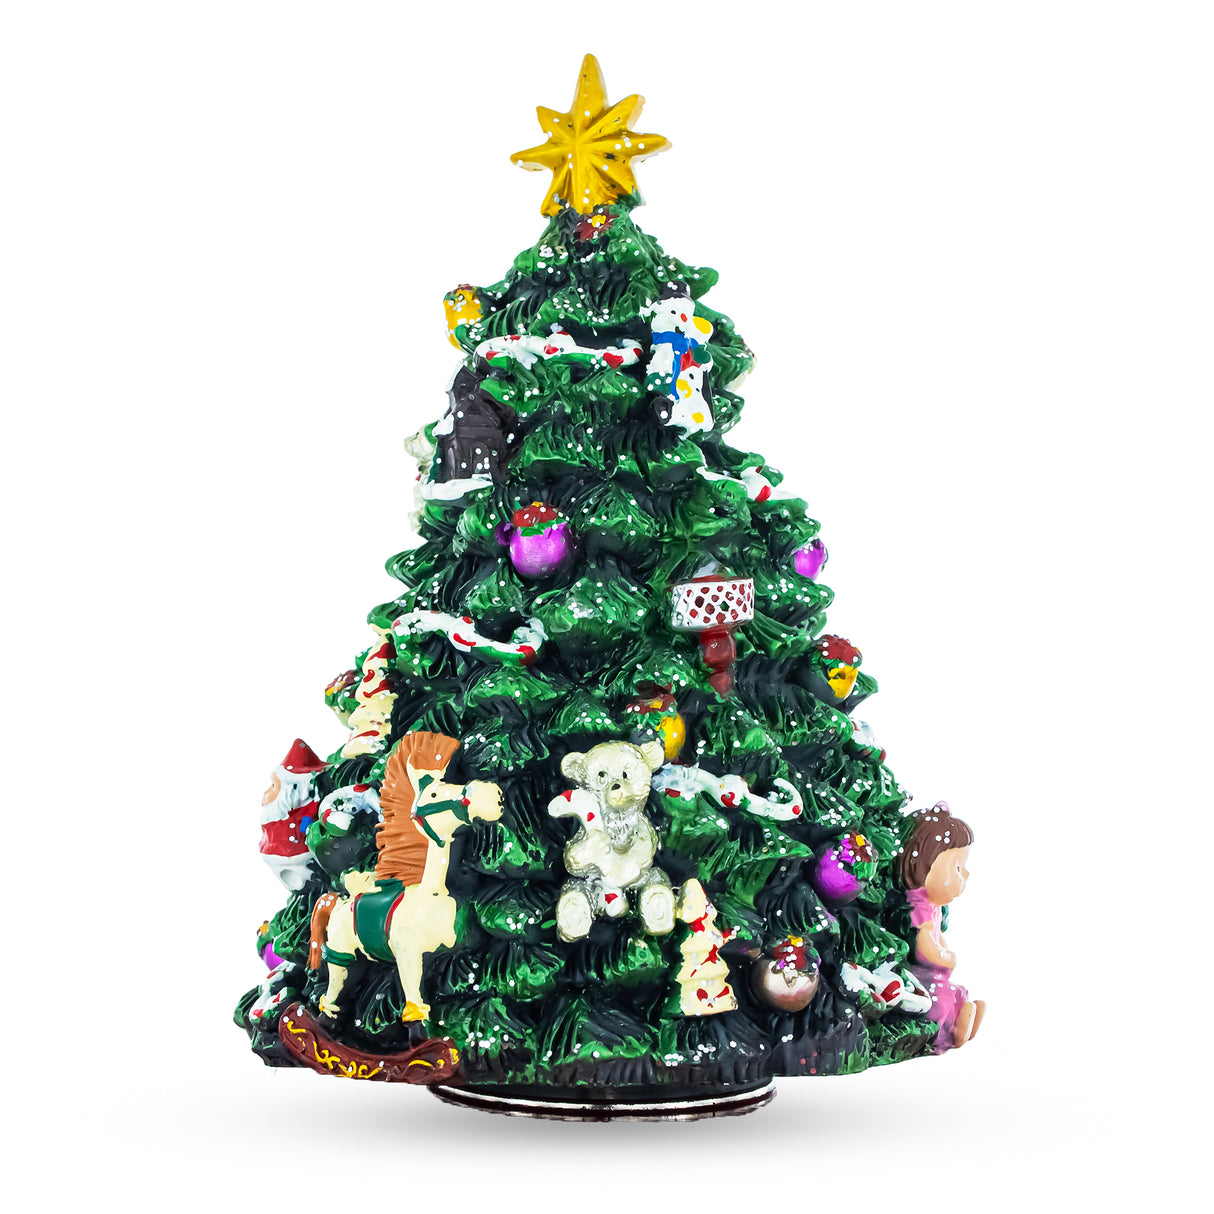 Buy Musical Figurines Tabletop Christmas Trees by BestPysanky Online Gift Ship